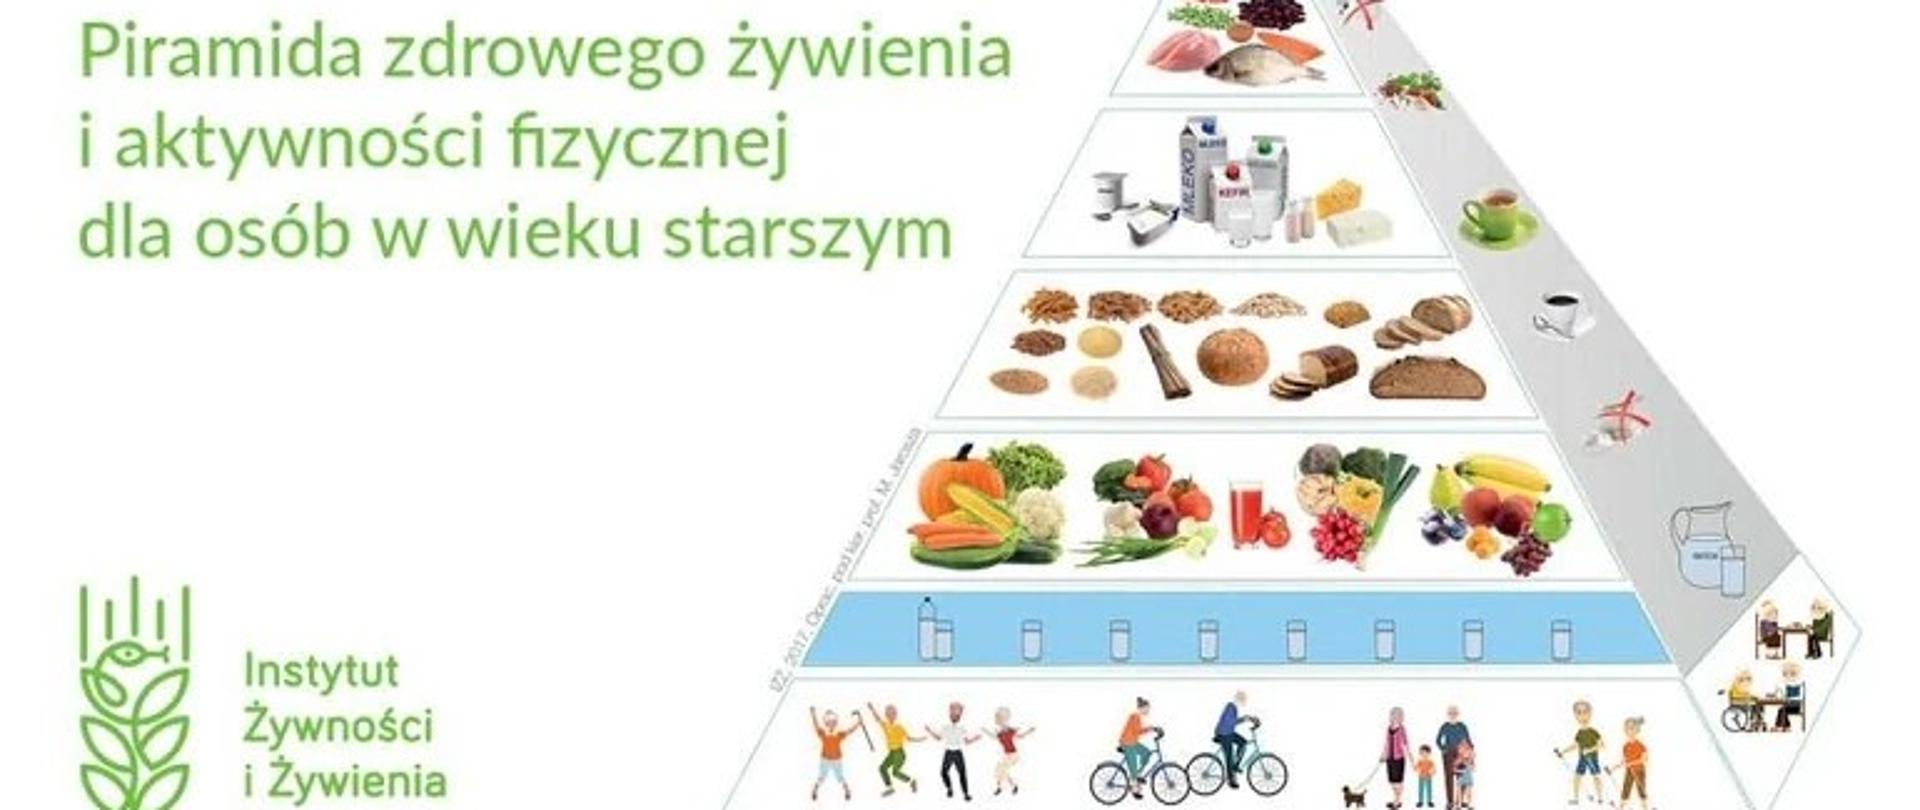 Obraz przedstawia piramidę zdrowego żywienia i aktywności fizycznej dla osób w wieku starszym 